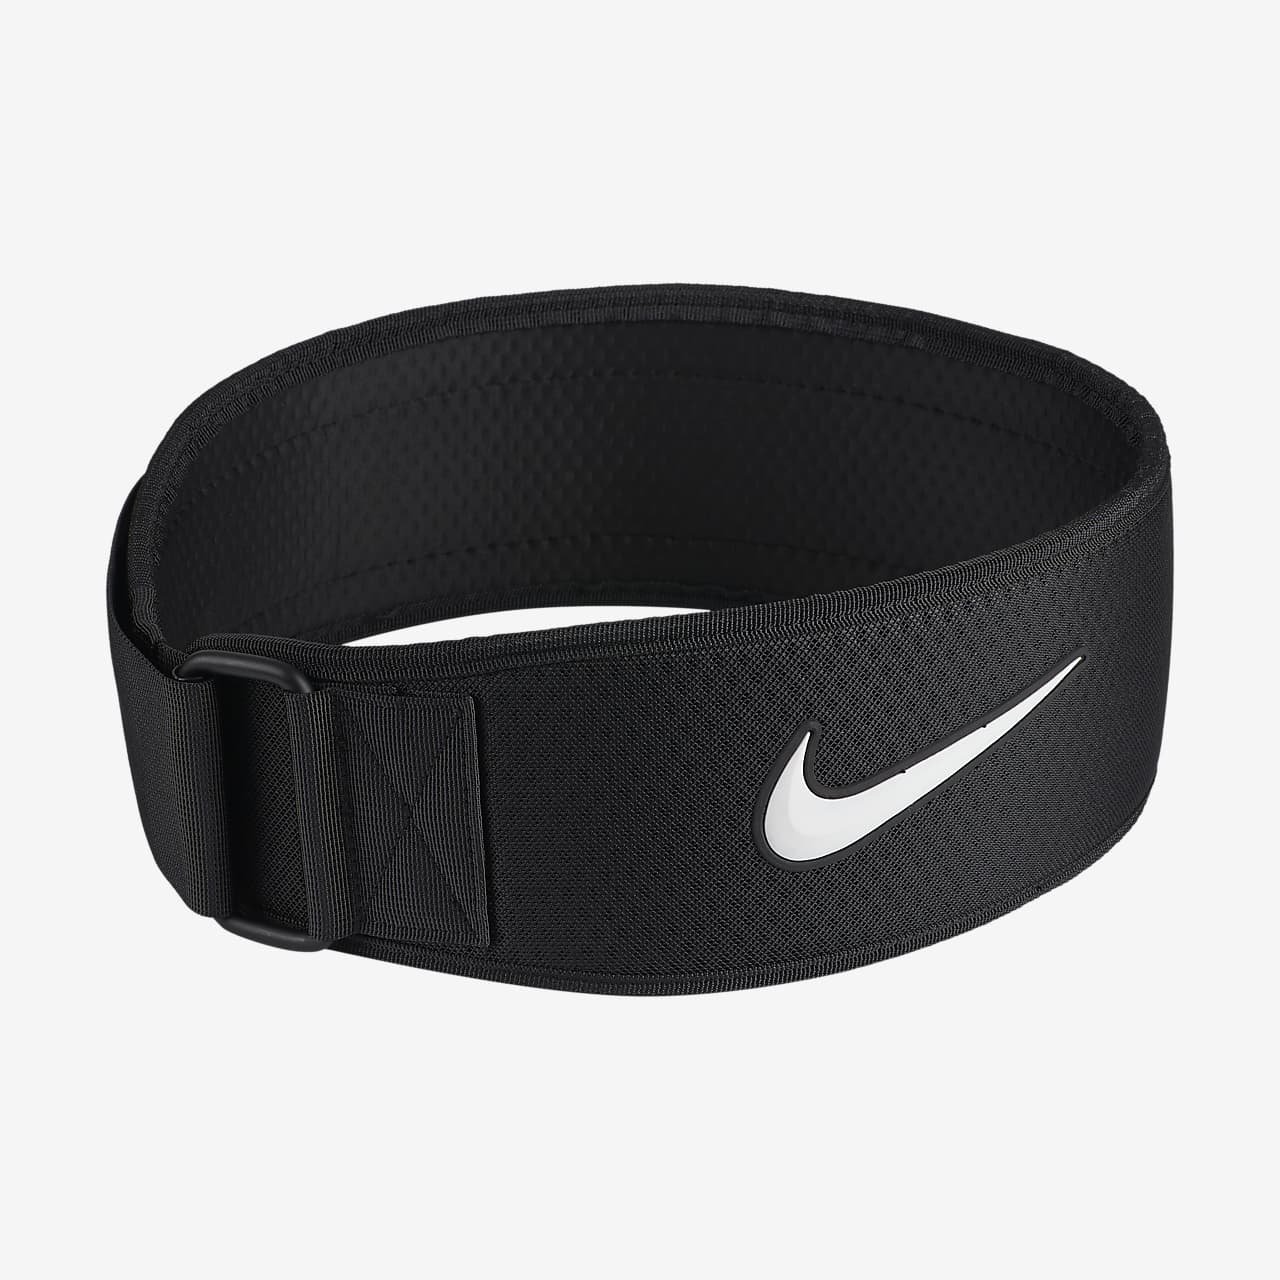 Nike Intensity Cinturón de entrenamiento - Hombre